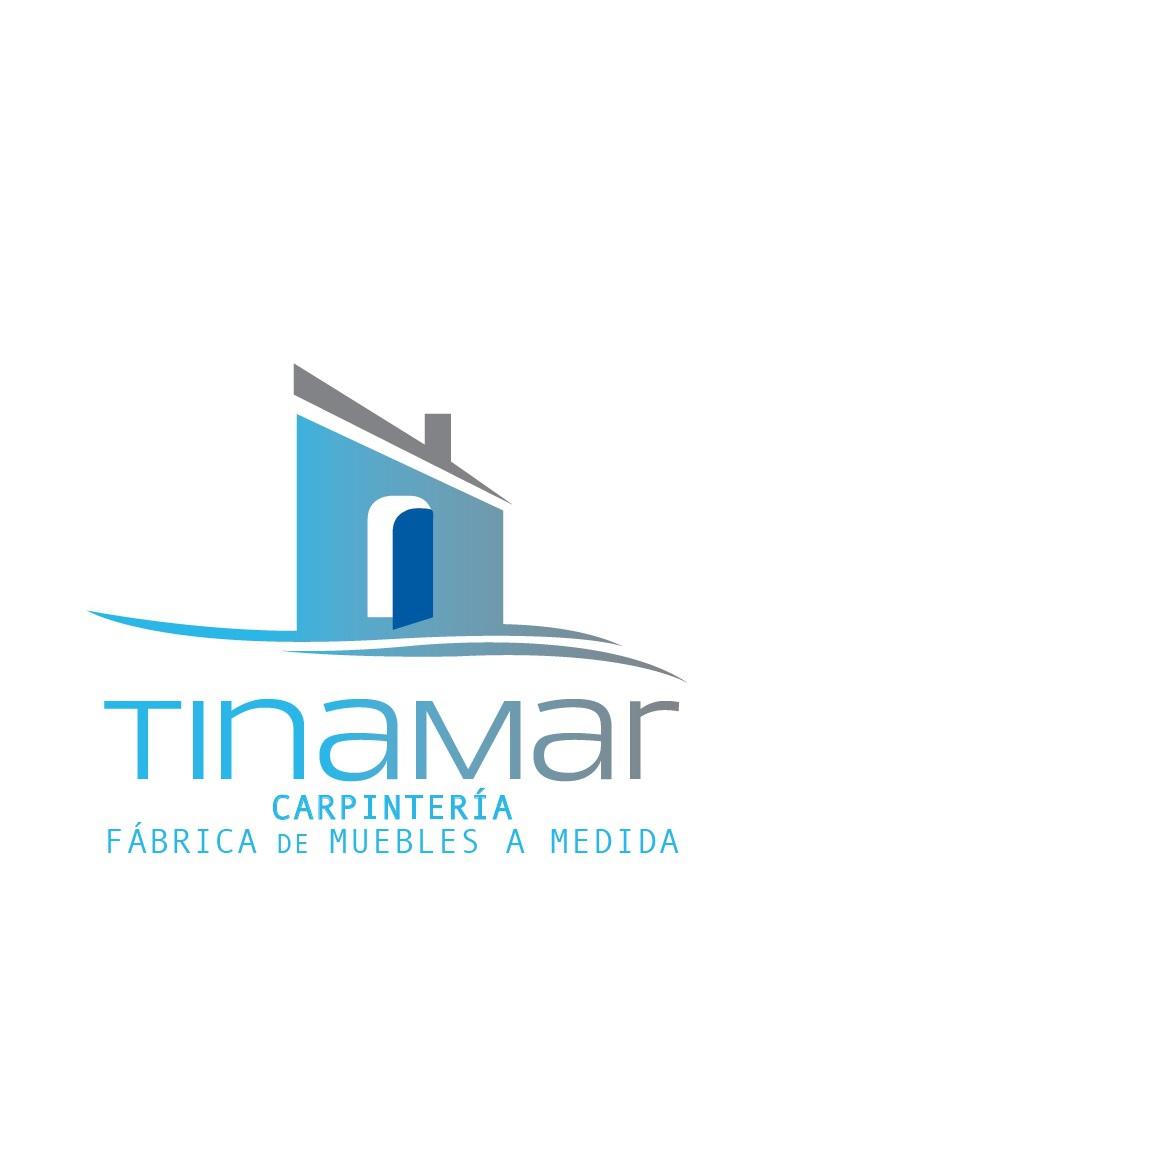 Tinamar Carpinteria Logo